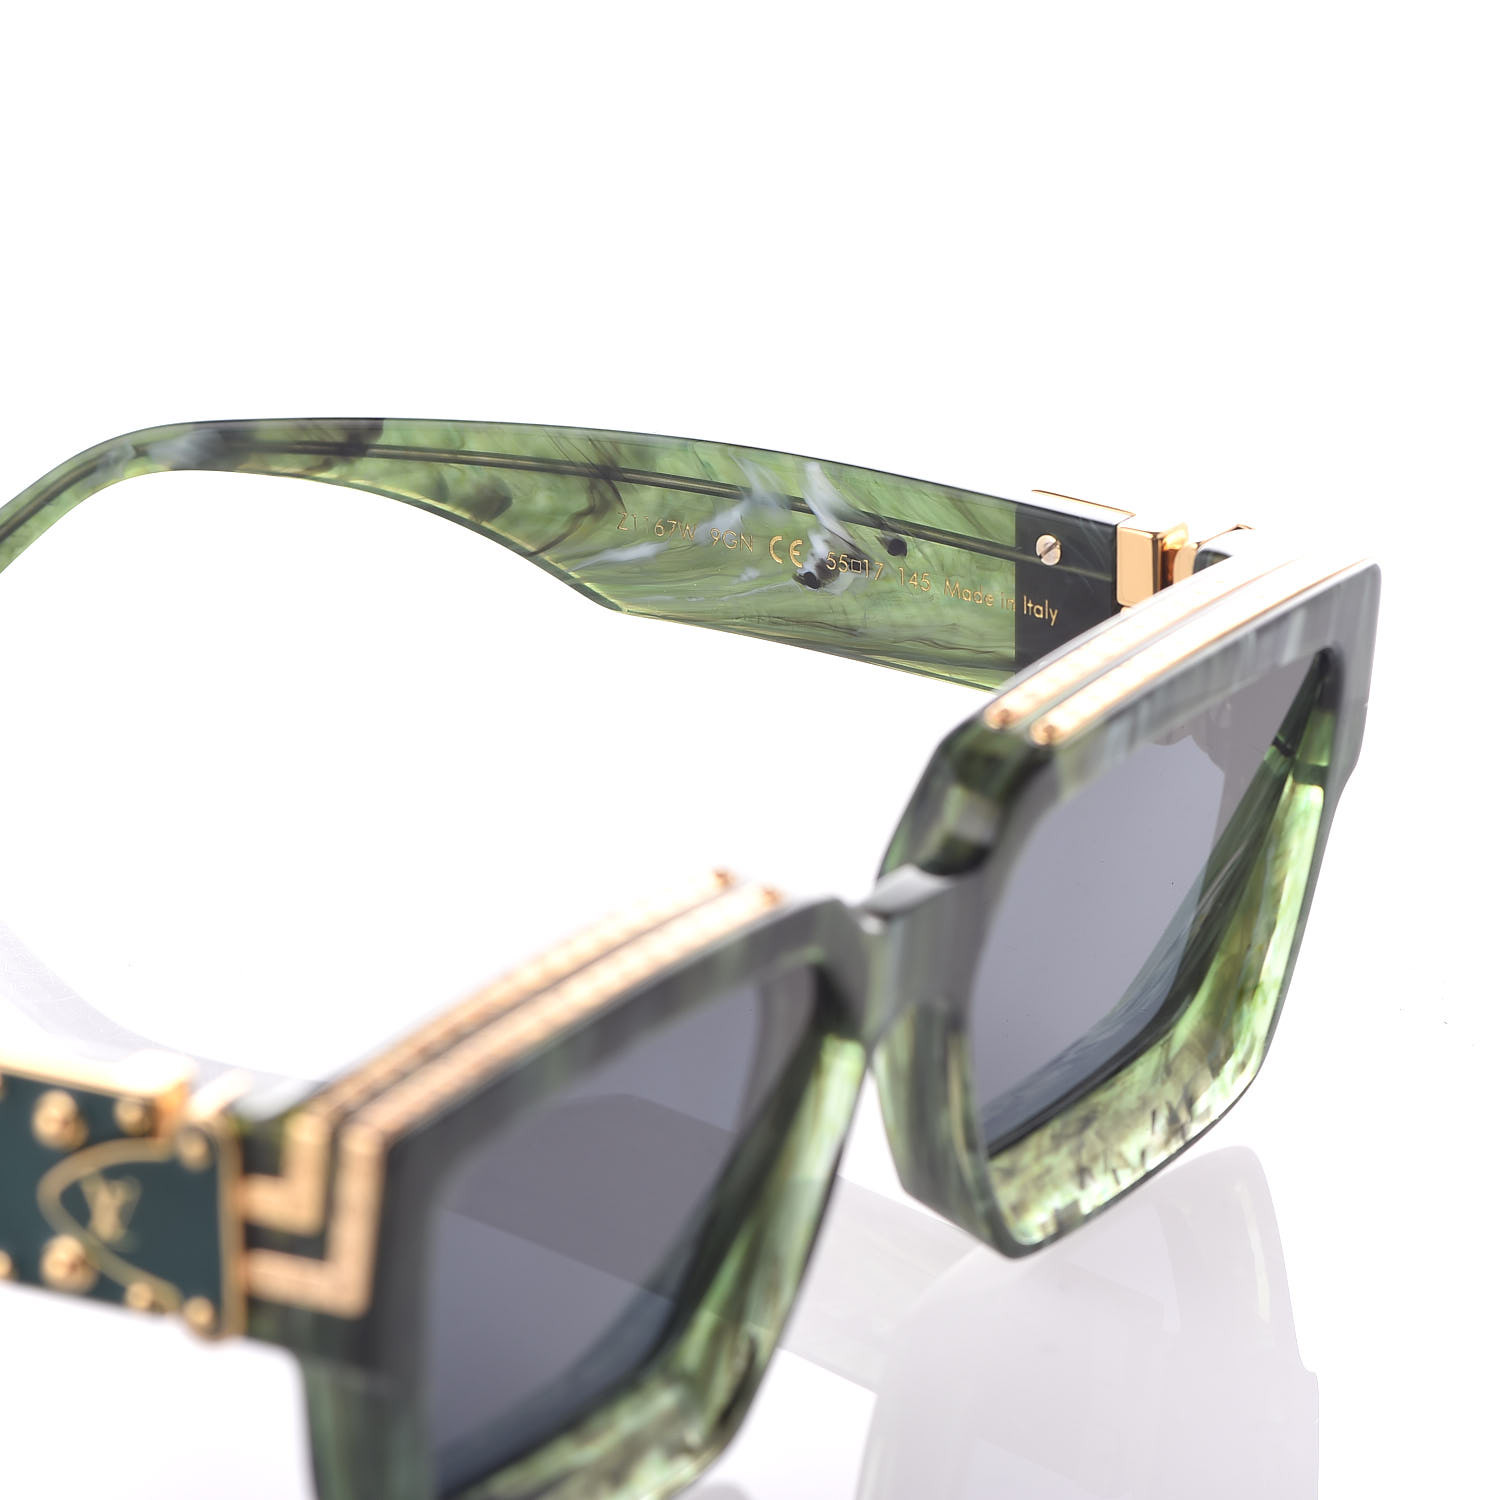 Louis Vuitton Millionaire 1.1 sunglasses Review #louisvuitton